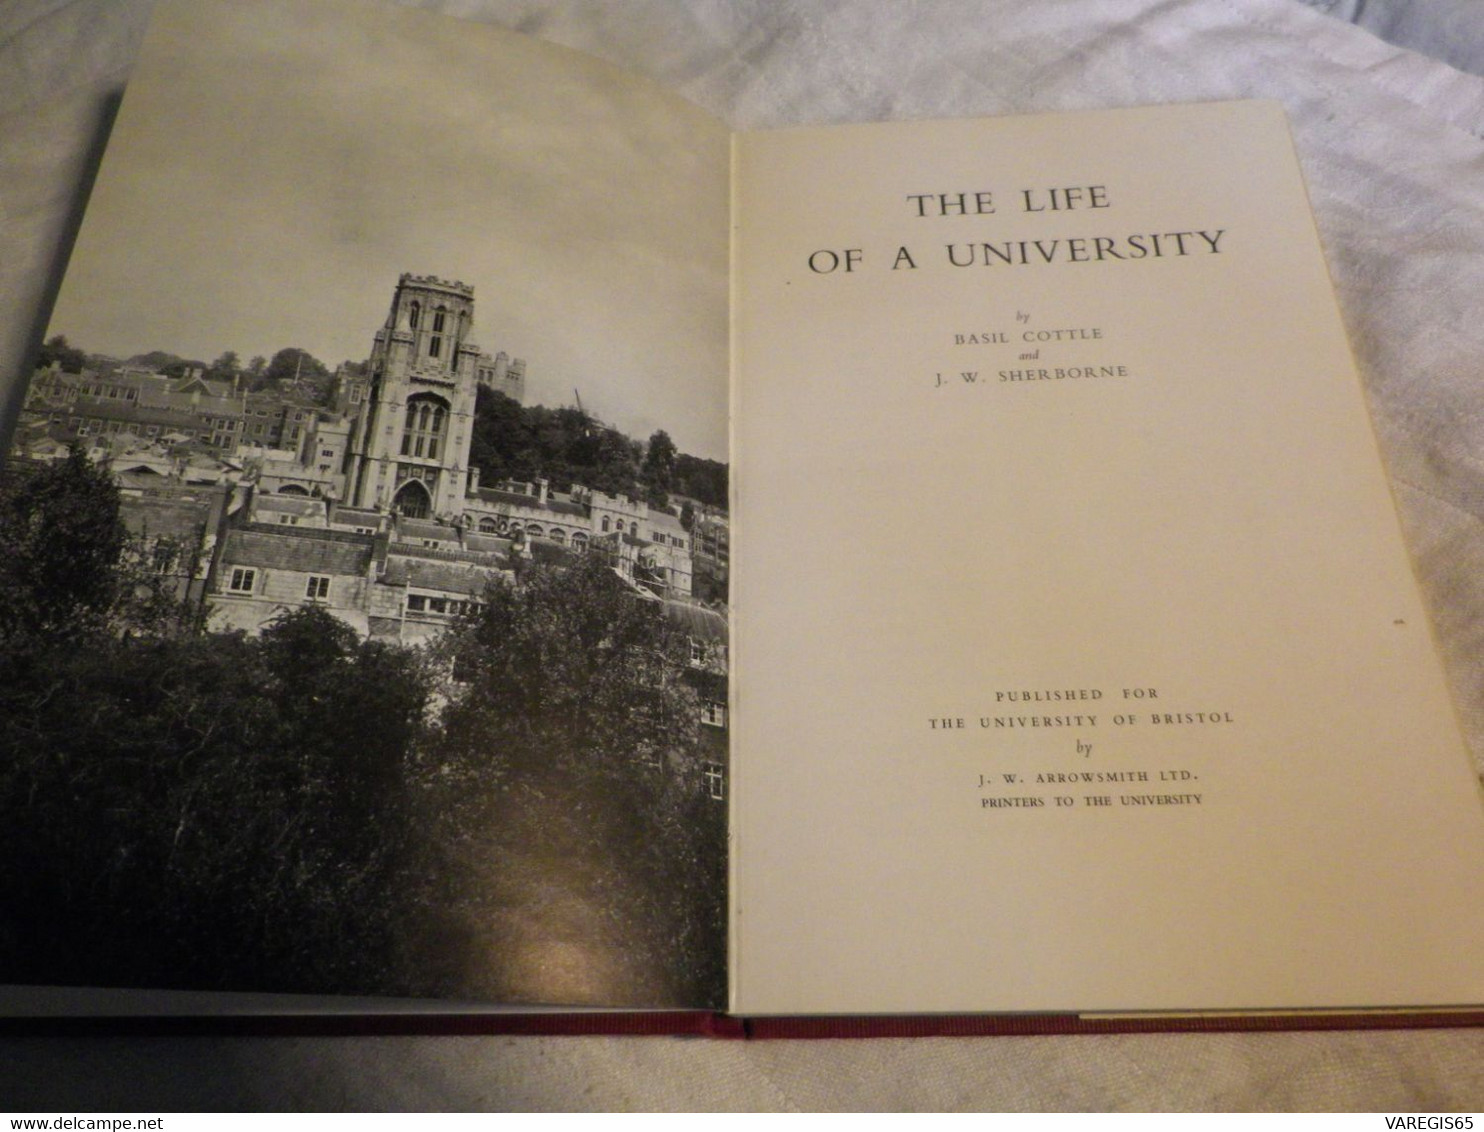 THE LIFE OF THE UNIVERSITY - UNIVERSITY OF BRISTOL - 1e EDITION 1951 - LIVRE RELIÉ AVEC JAQUETTE - Cultural